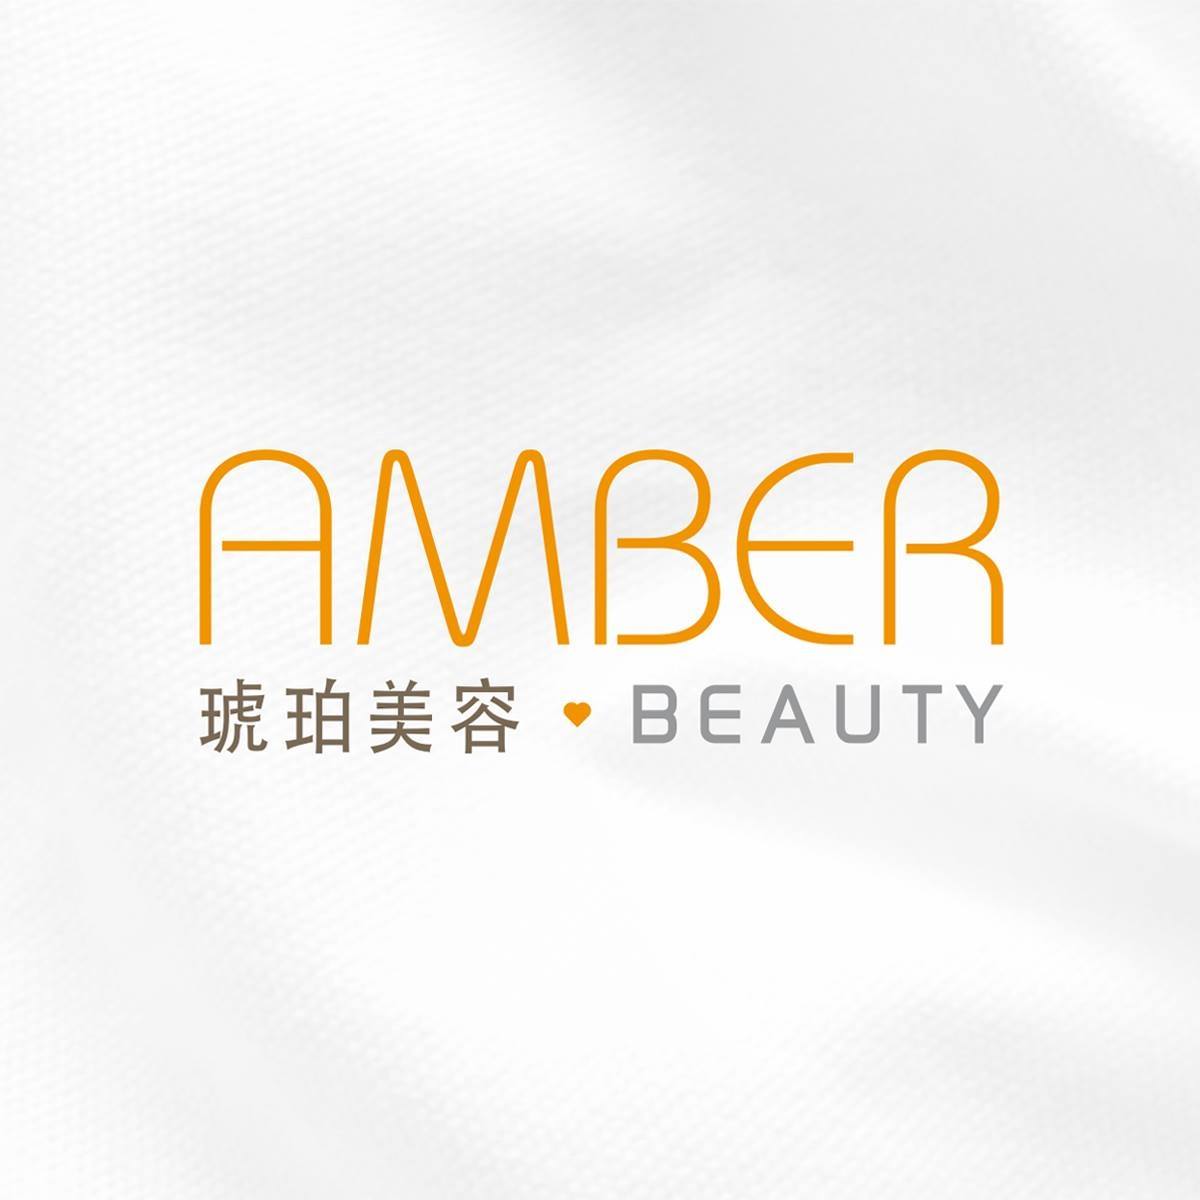 美容院 Beauty Salon 集团琥珀美容 Amber Beauty (銅鑼灣店) @ 香港美容网 HK Beauty Salon